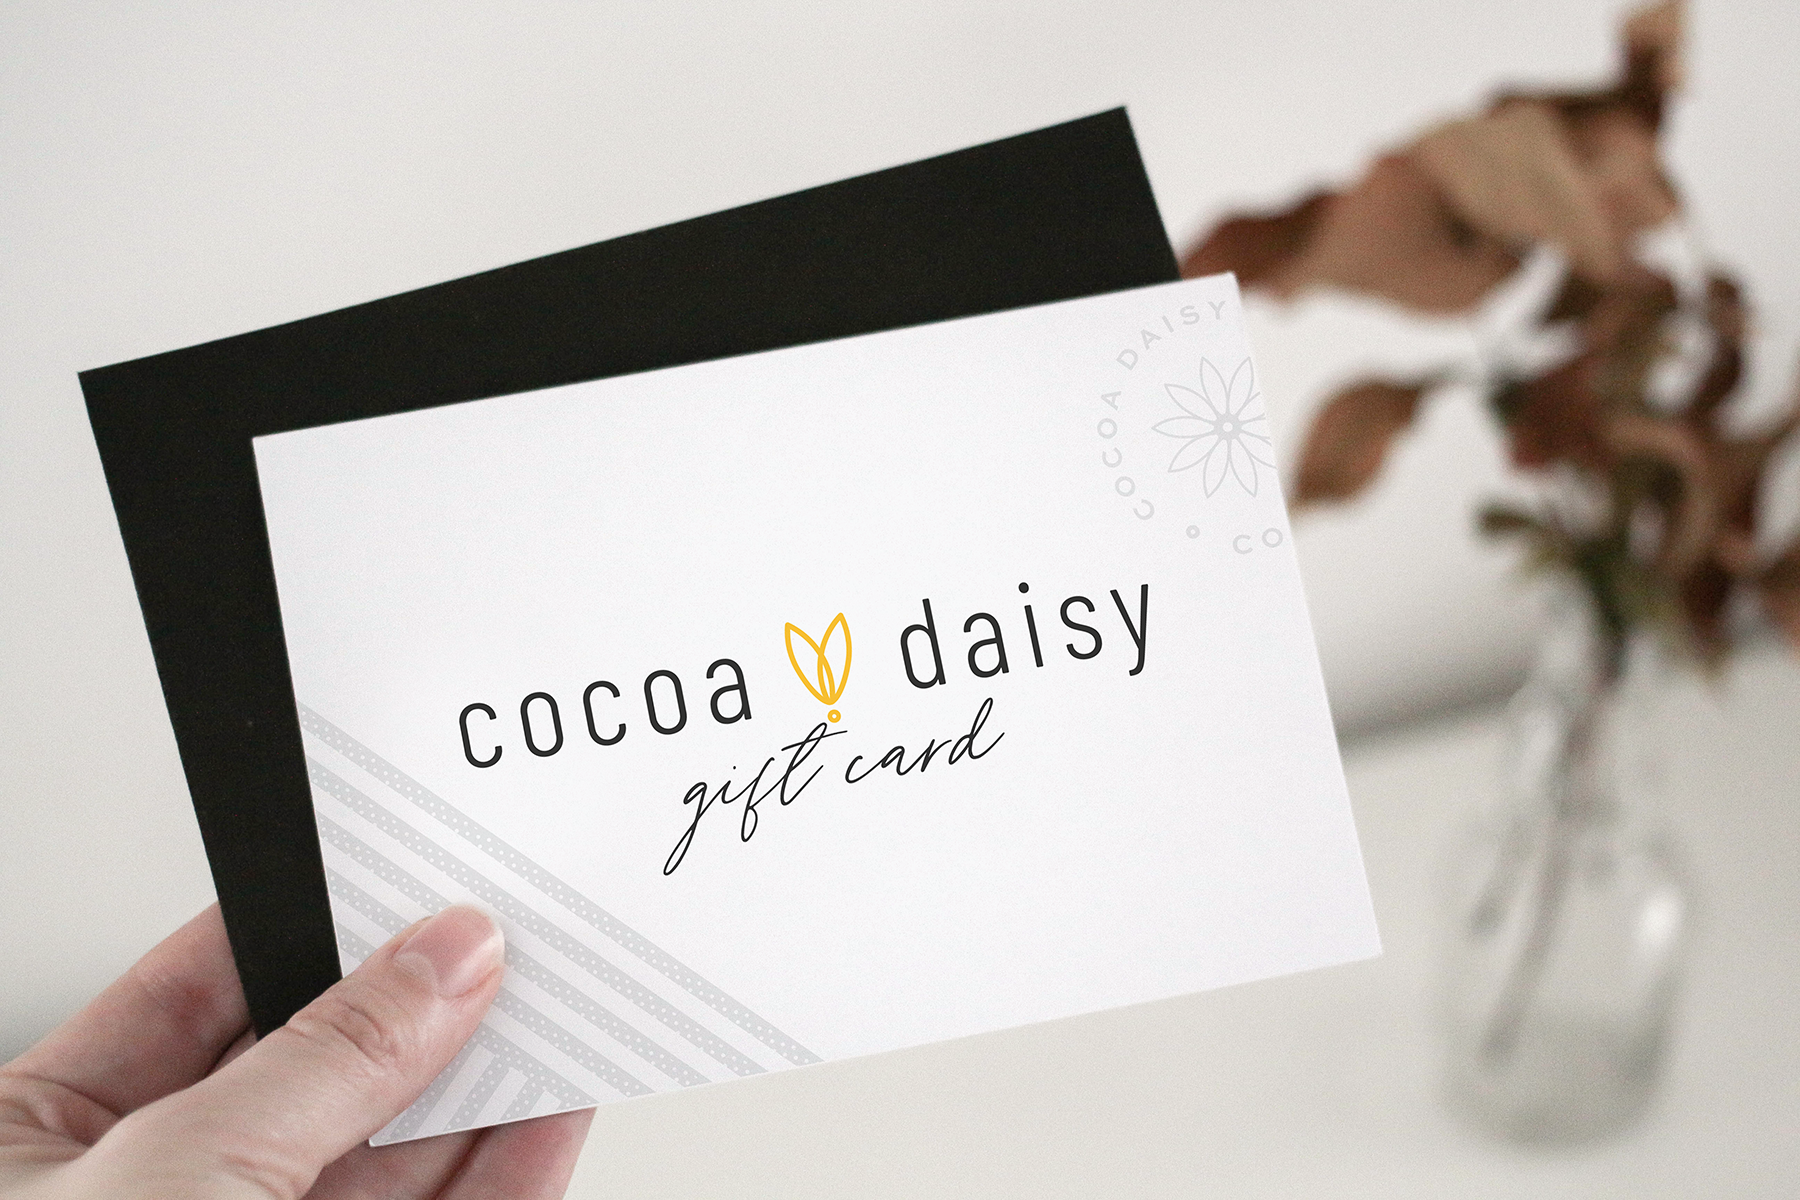 Cocoa Daisy Gift Card